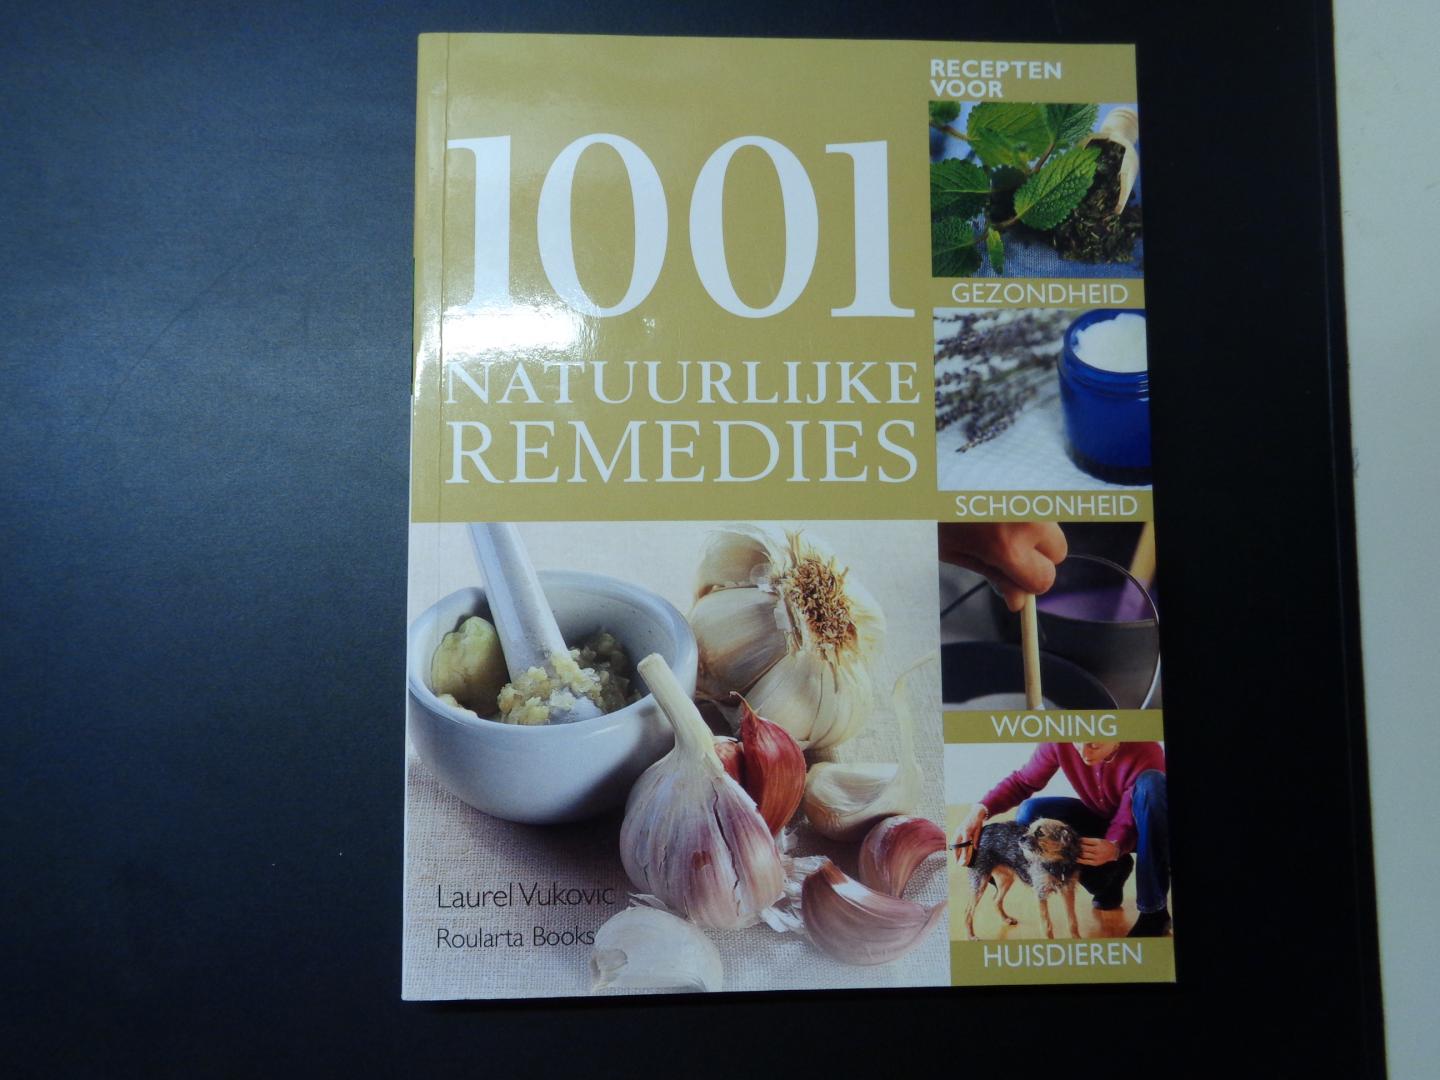 laurel  vukovic - 1001 natuurlijke remedies